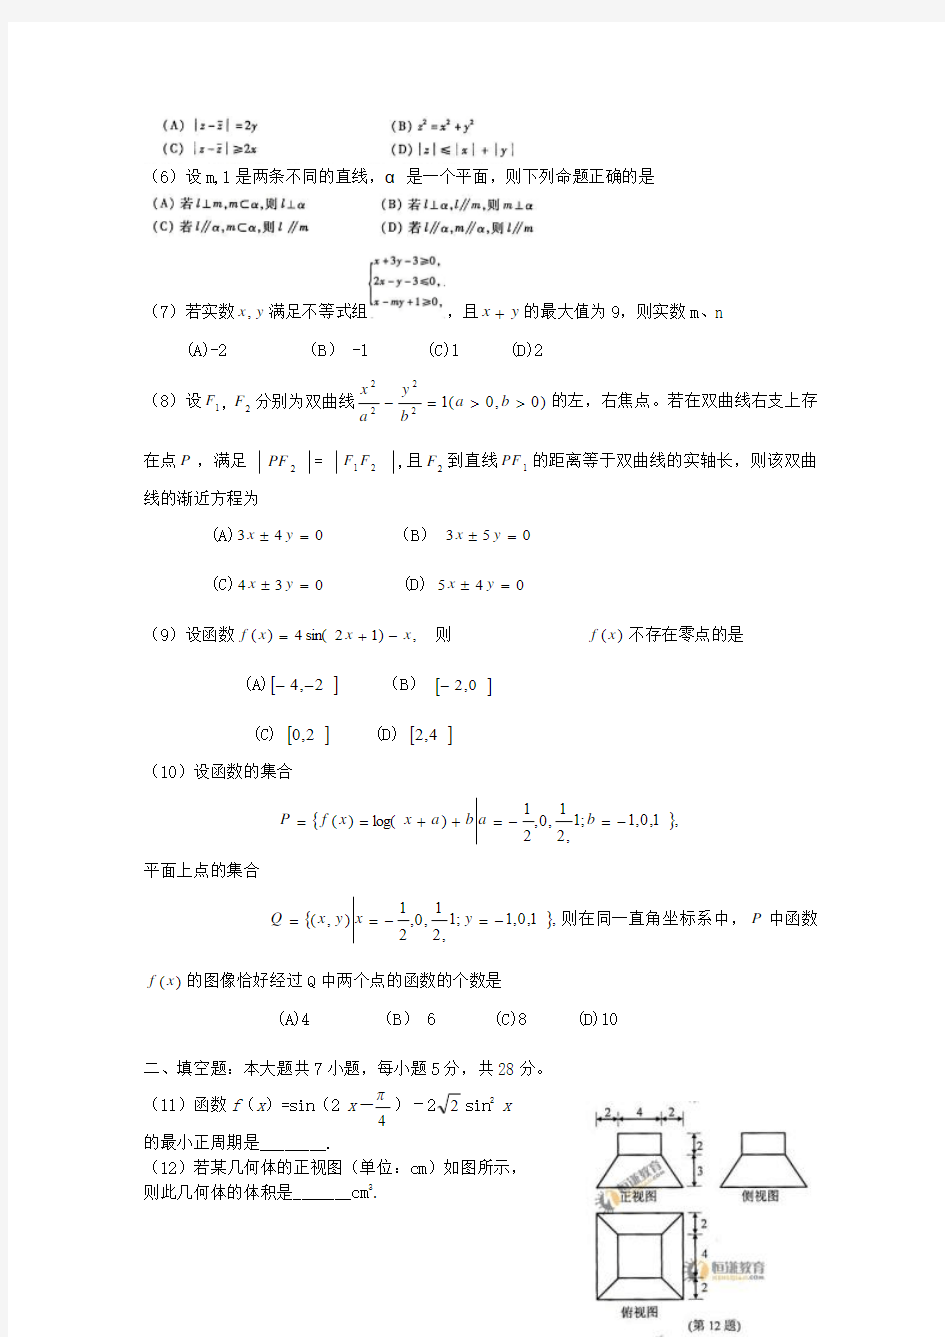 2010年高考理科数学试卷(浙江省)